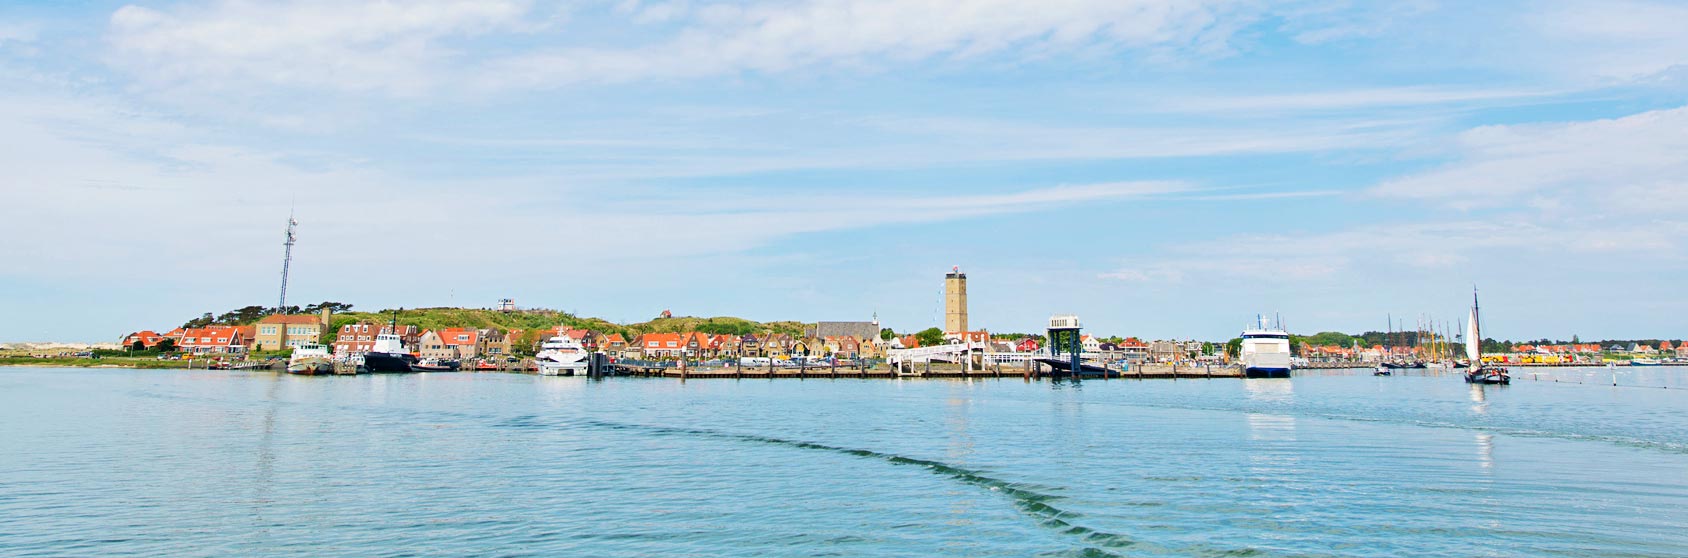 Terschelling - Hafen von See aus gesehen